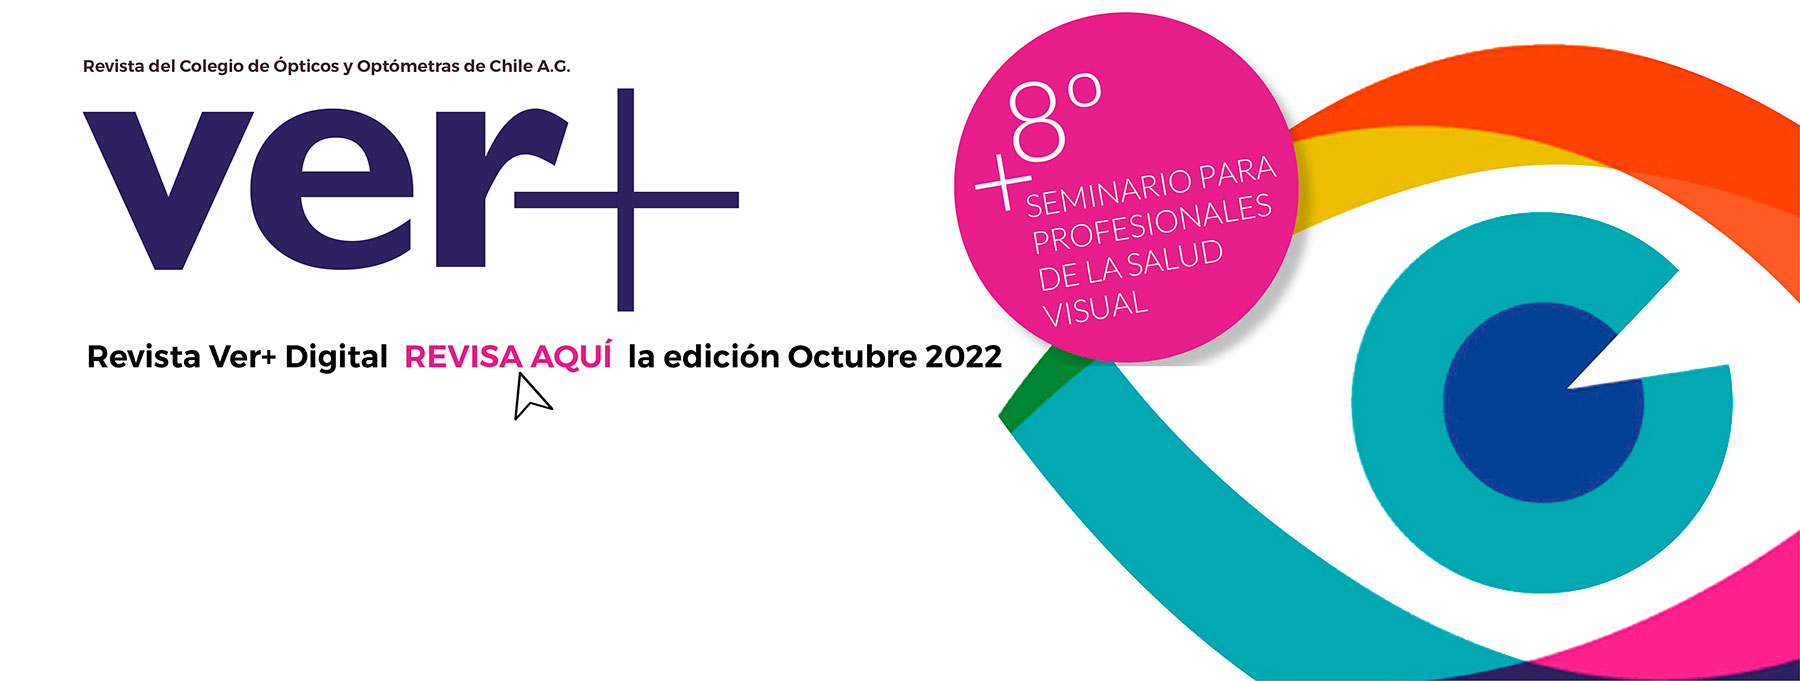 Revista Ver+ Edición OCTUBRE 2022- Especial 8° Seminario para Profesionales de la Salud Visual